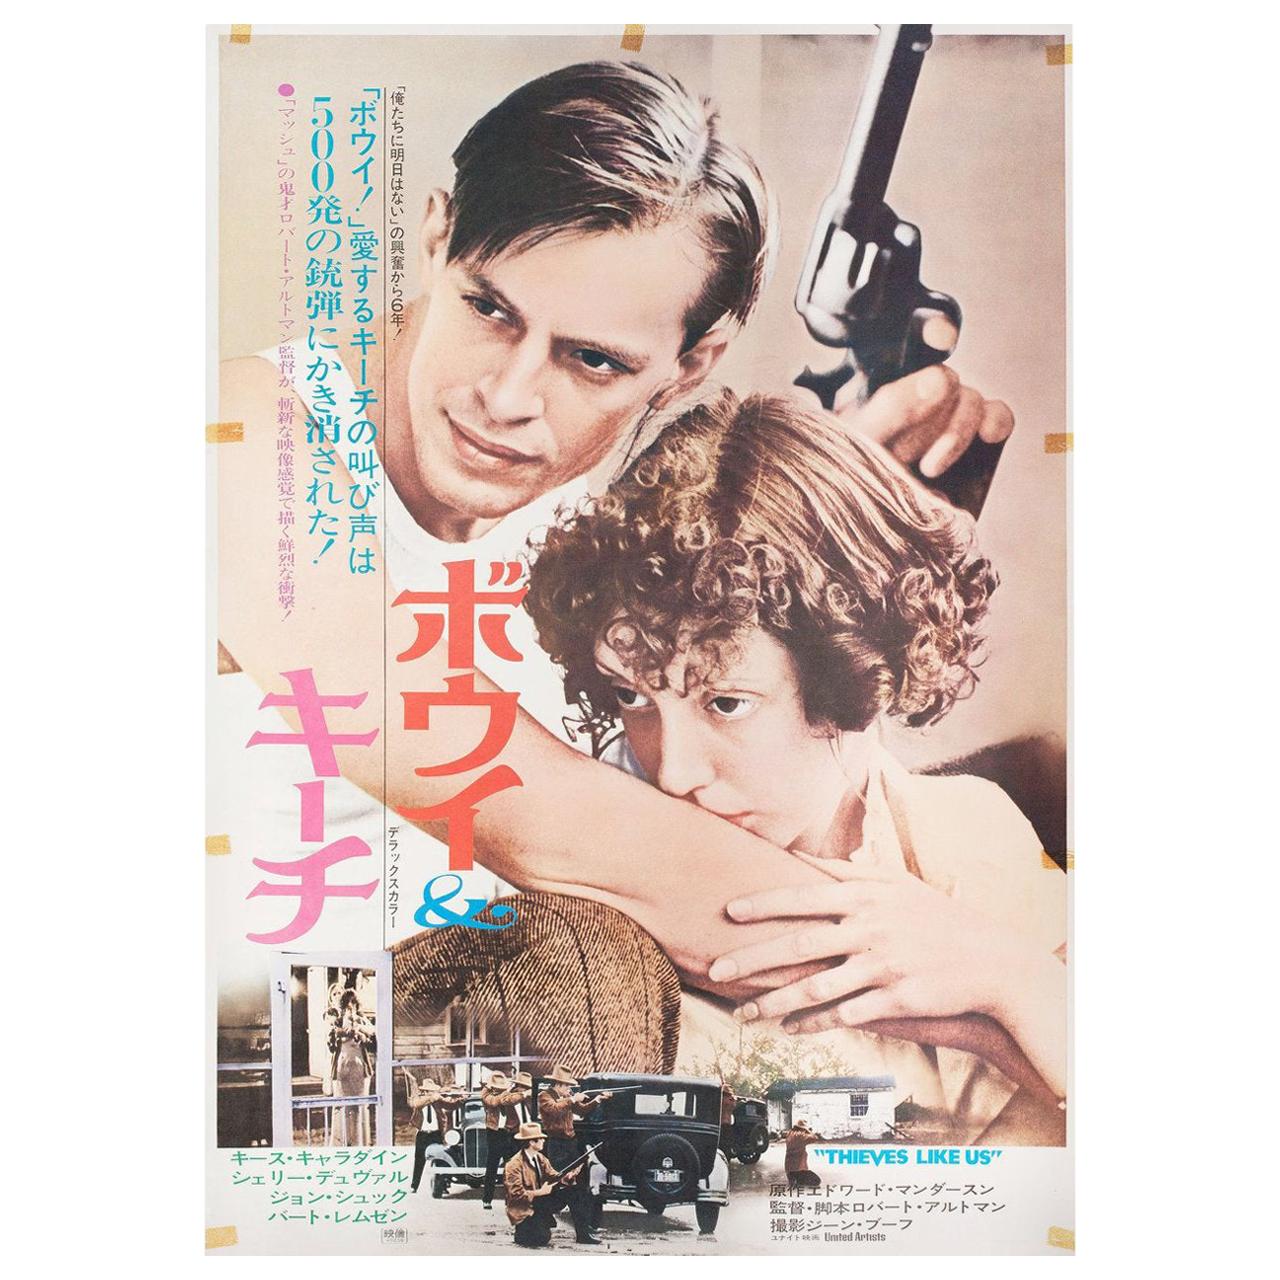 affiche du film japonais B2 de 1974 "Thieves Like Us" (Des voleurs comme nous)